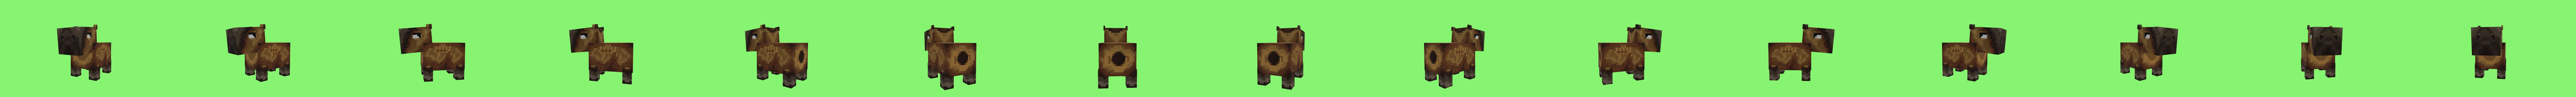 Minecraft Capybara - 3D model by KaerthModels (@KaerthModels) [b9710b5]